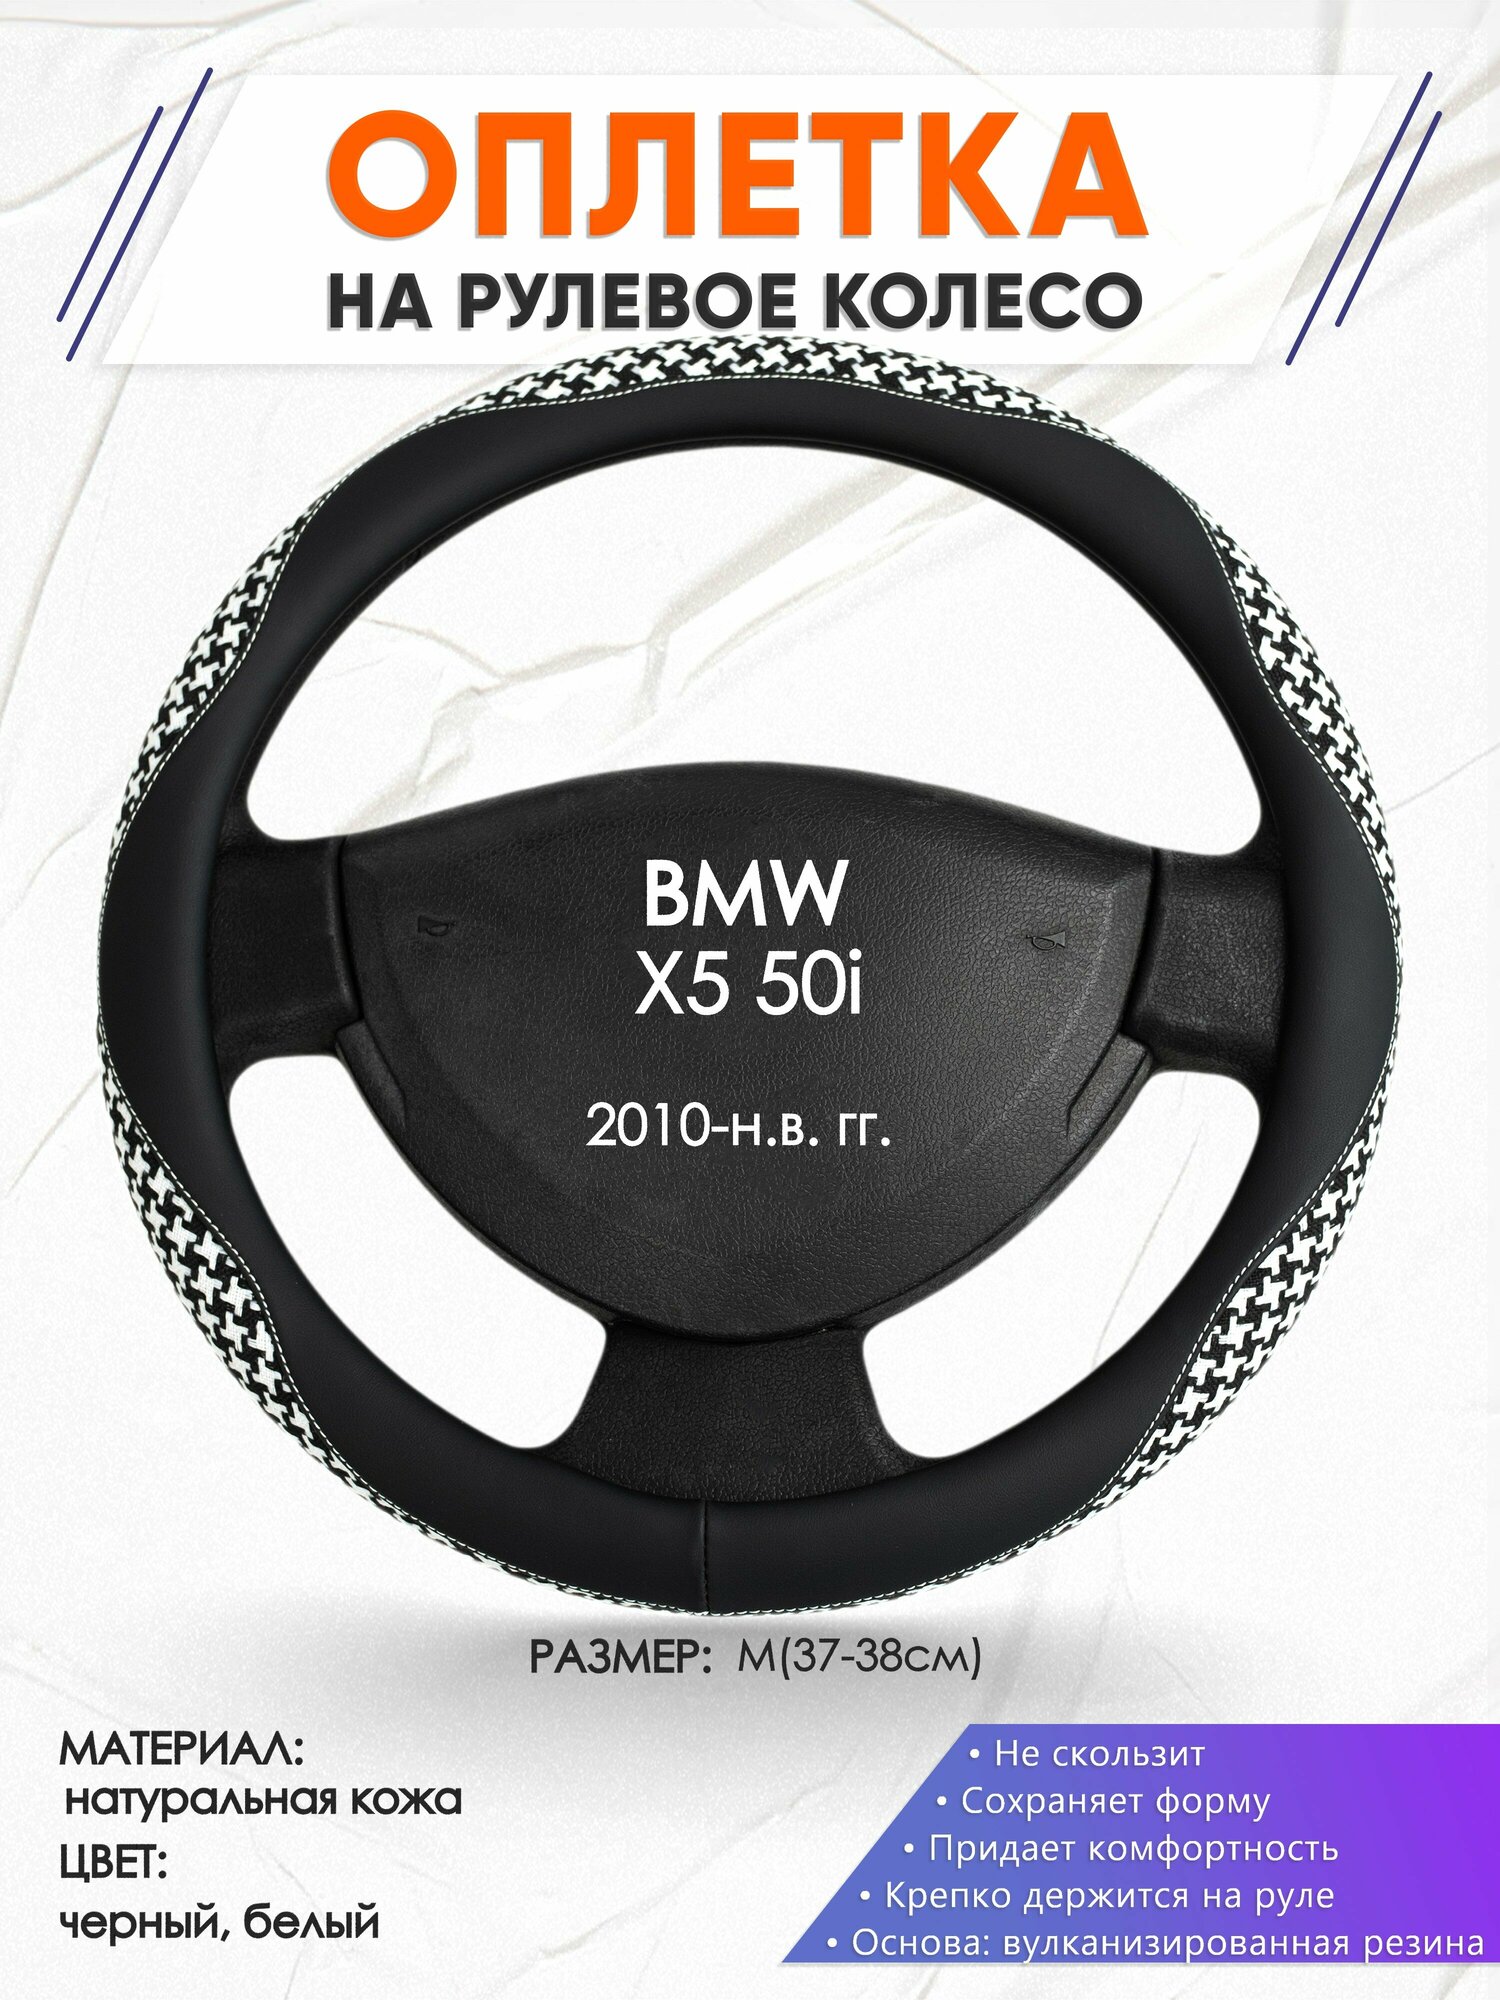 Оплетка наруль для BMW X5 50i(Бмв икс5) 2010-н. в. годов выпуска, размер M(37-38см), Натуральная кожа 21